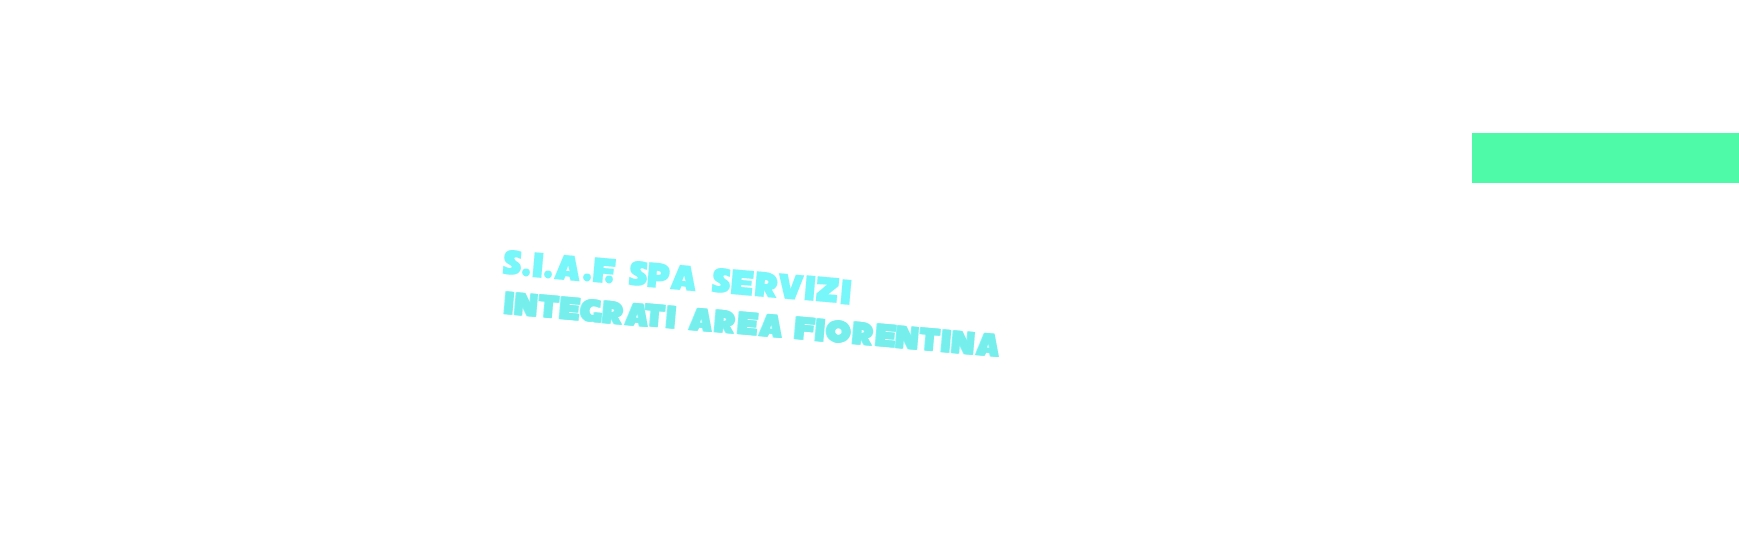 logo S.I.A.F. SpA Servizi Integrati Area Fiorentina